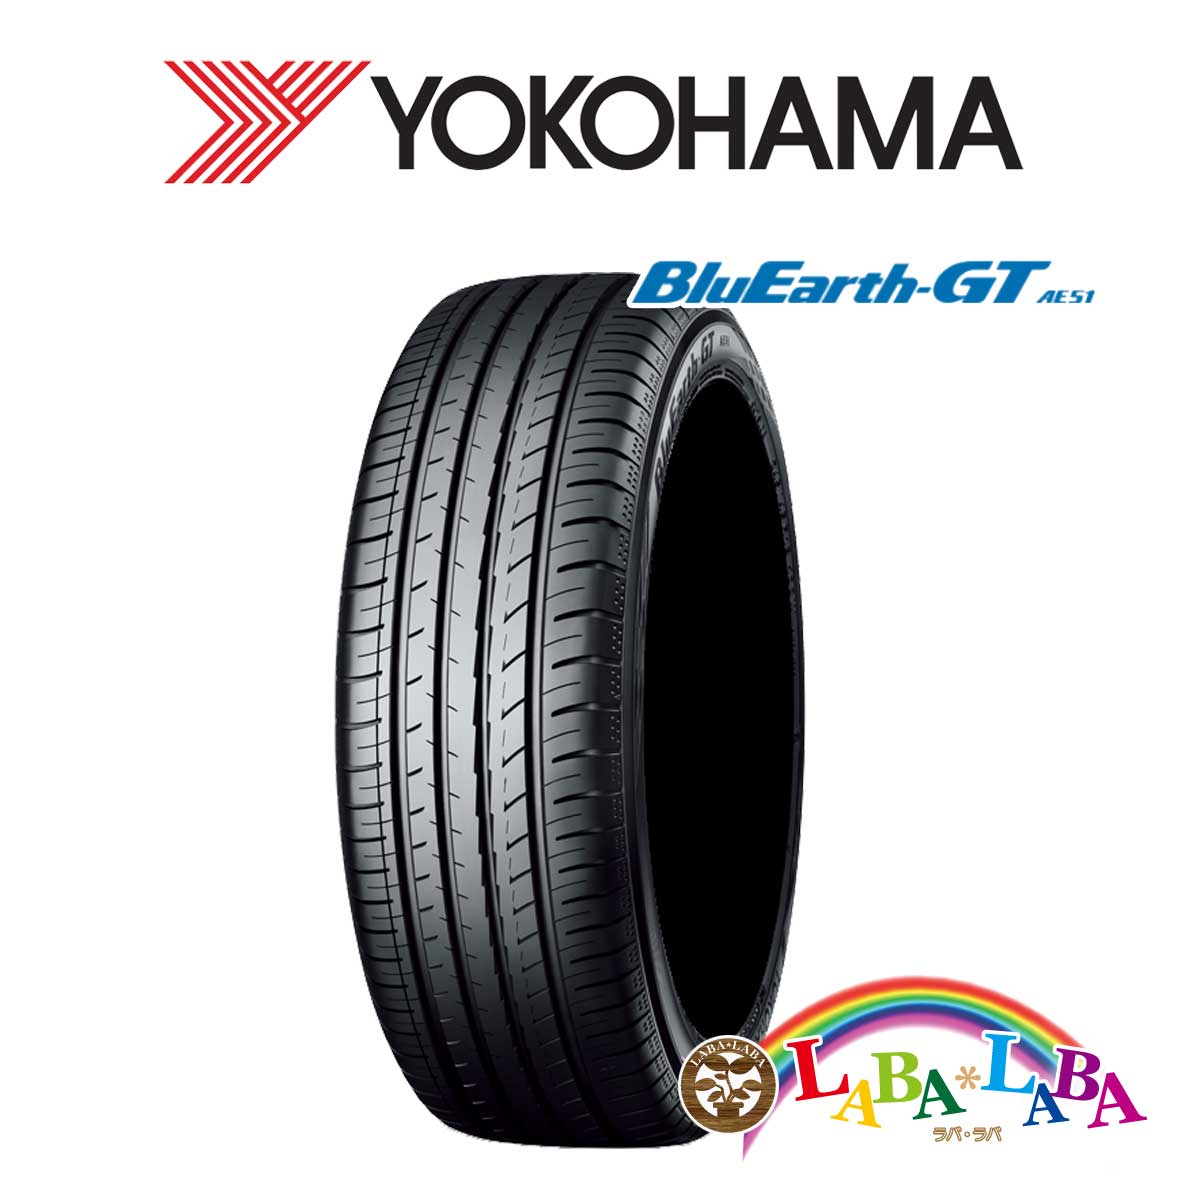 送料無料 国産タイヤ サマータイヤ 新品 タイヤのみ 4本SET YOKOHAMA ヨコハマ 4本セット AE51 大規模セール 87W 45R16 BluEarth-GT 205 売れ筋アイテムラン XL ブルーアース